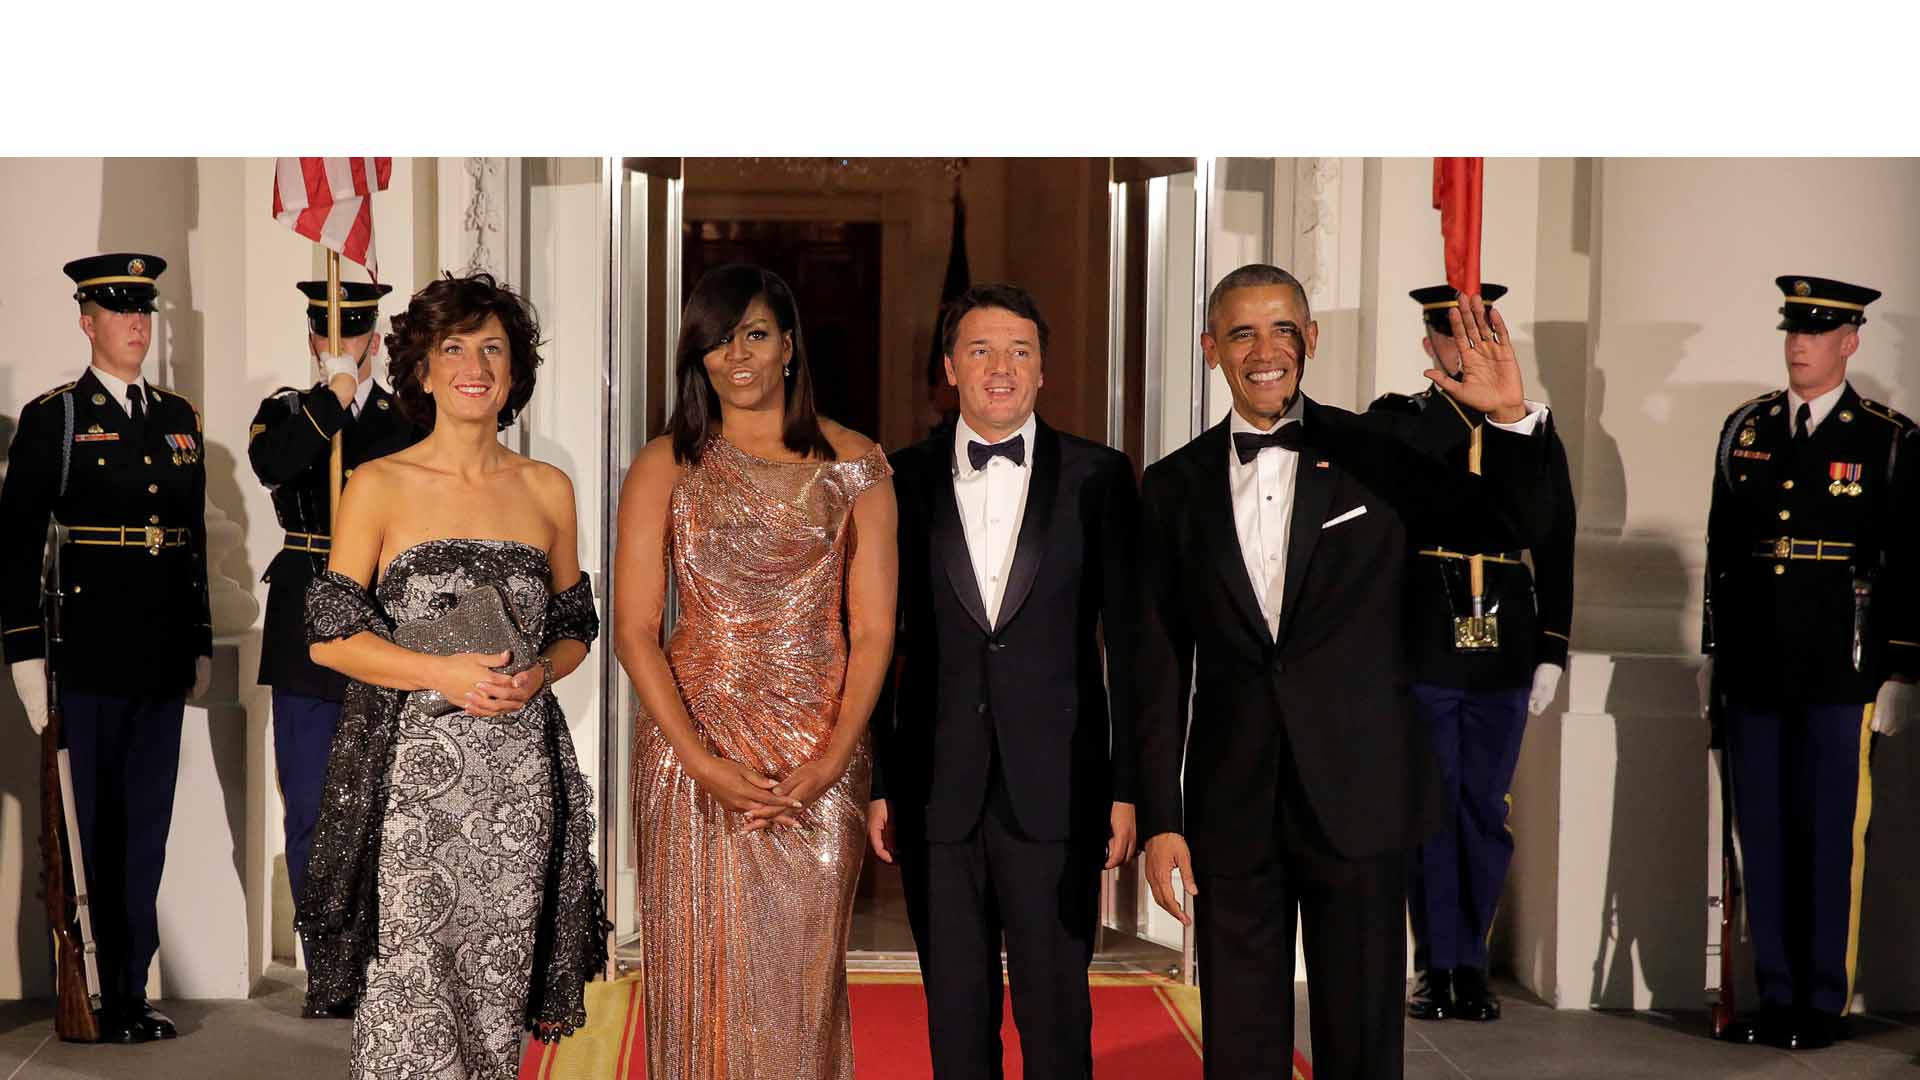 Hasta el presidente de los Estados Unidos quedó oppacado por la elegancia de la primera dama en su vestido de la marca italiana Versace